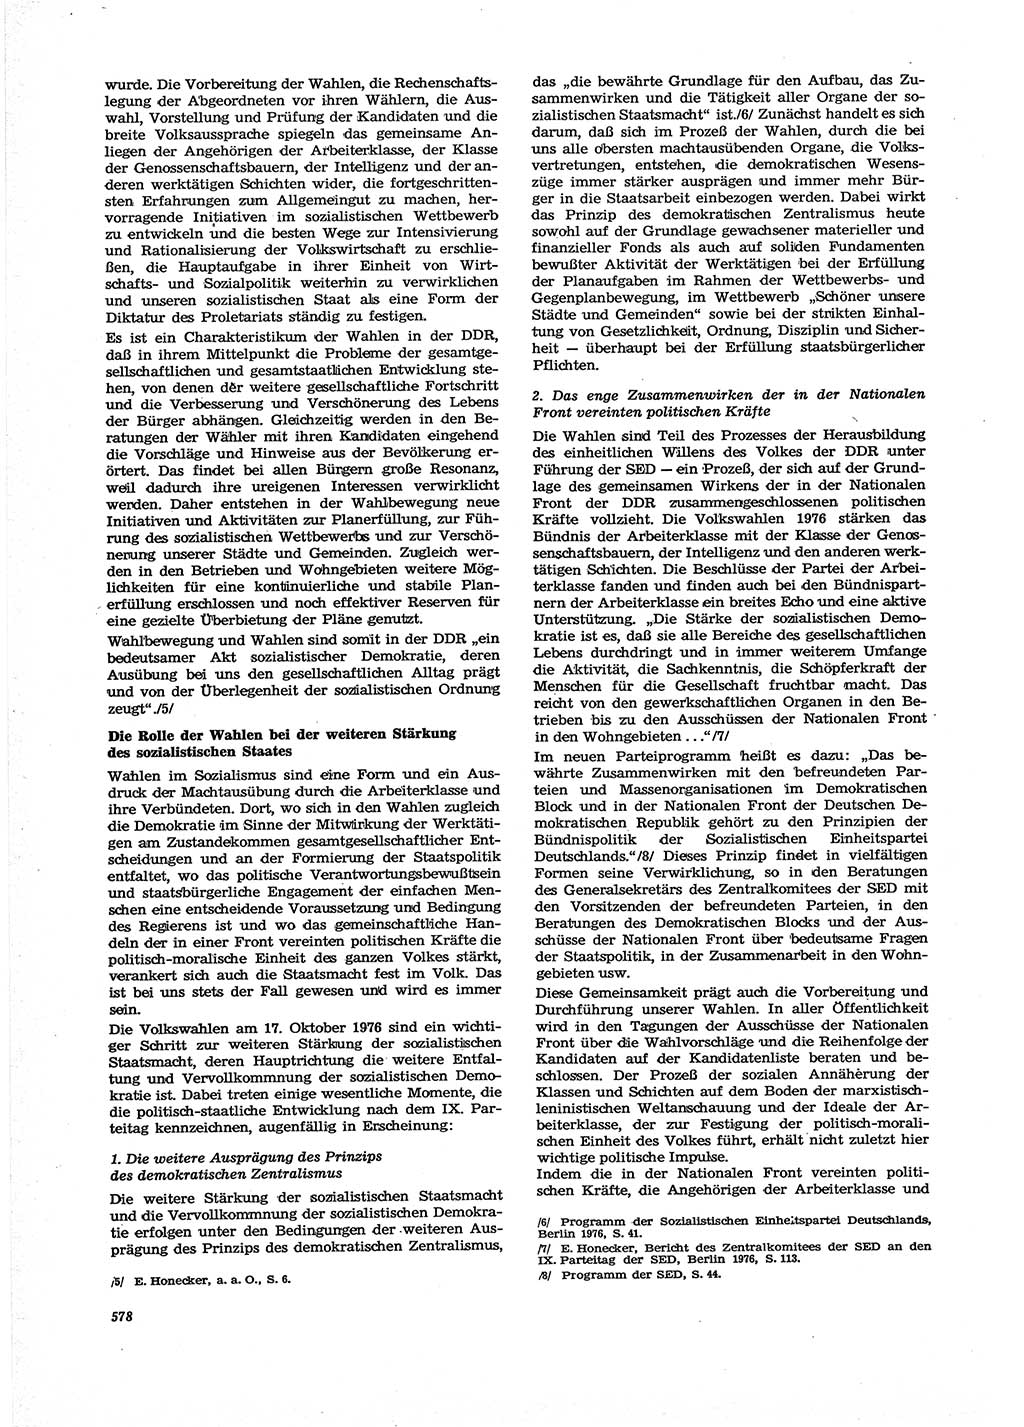 Neue Justiz (NJ), Zeitschrift für Recht und Rechtswissenschaft [Deutsche Demokratische Republik (DDR)], 30. Jahrgang 1976, Seite 578 (NJ DDR 1976, S. 578)